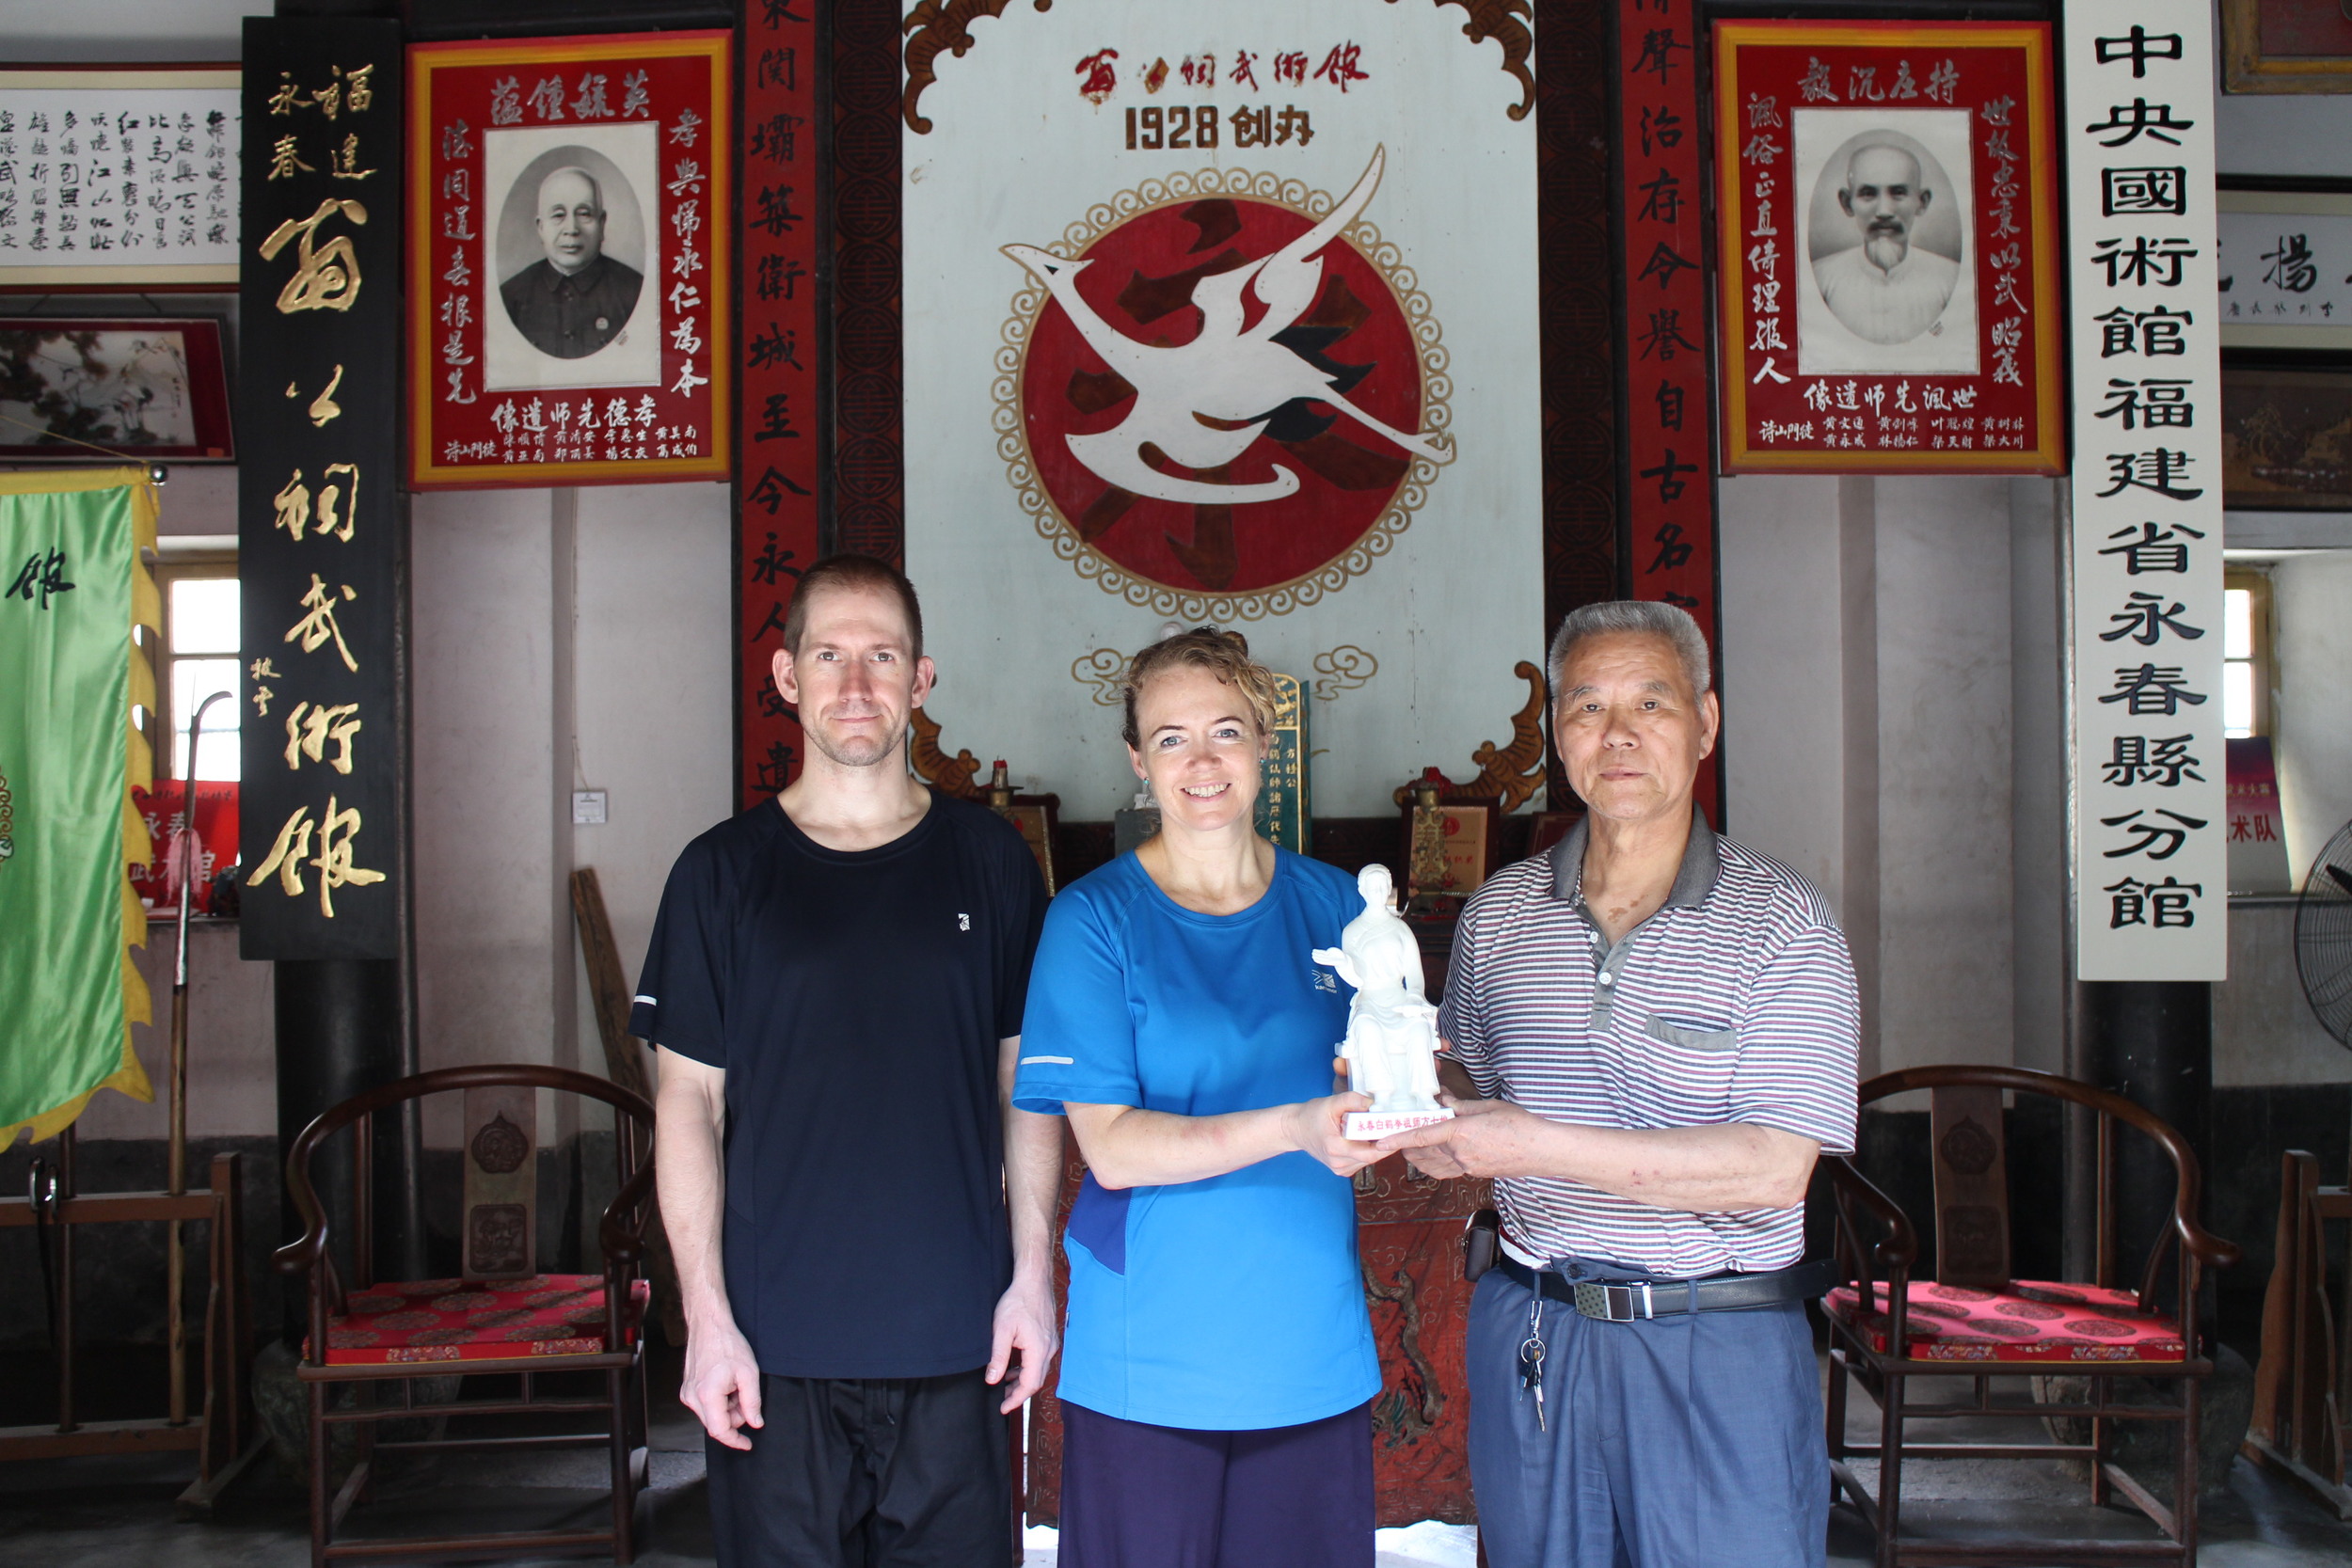 With Master Pan Cheng Miao in Yong Chun